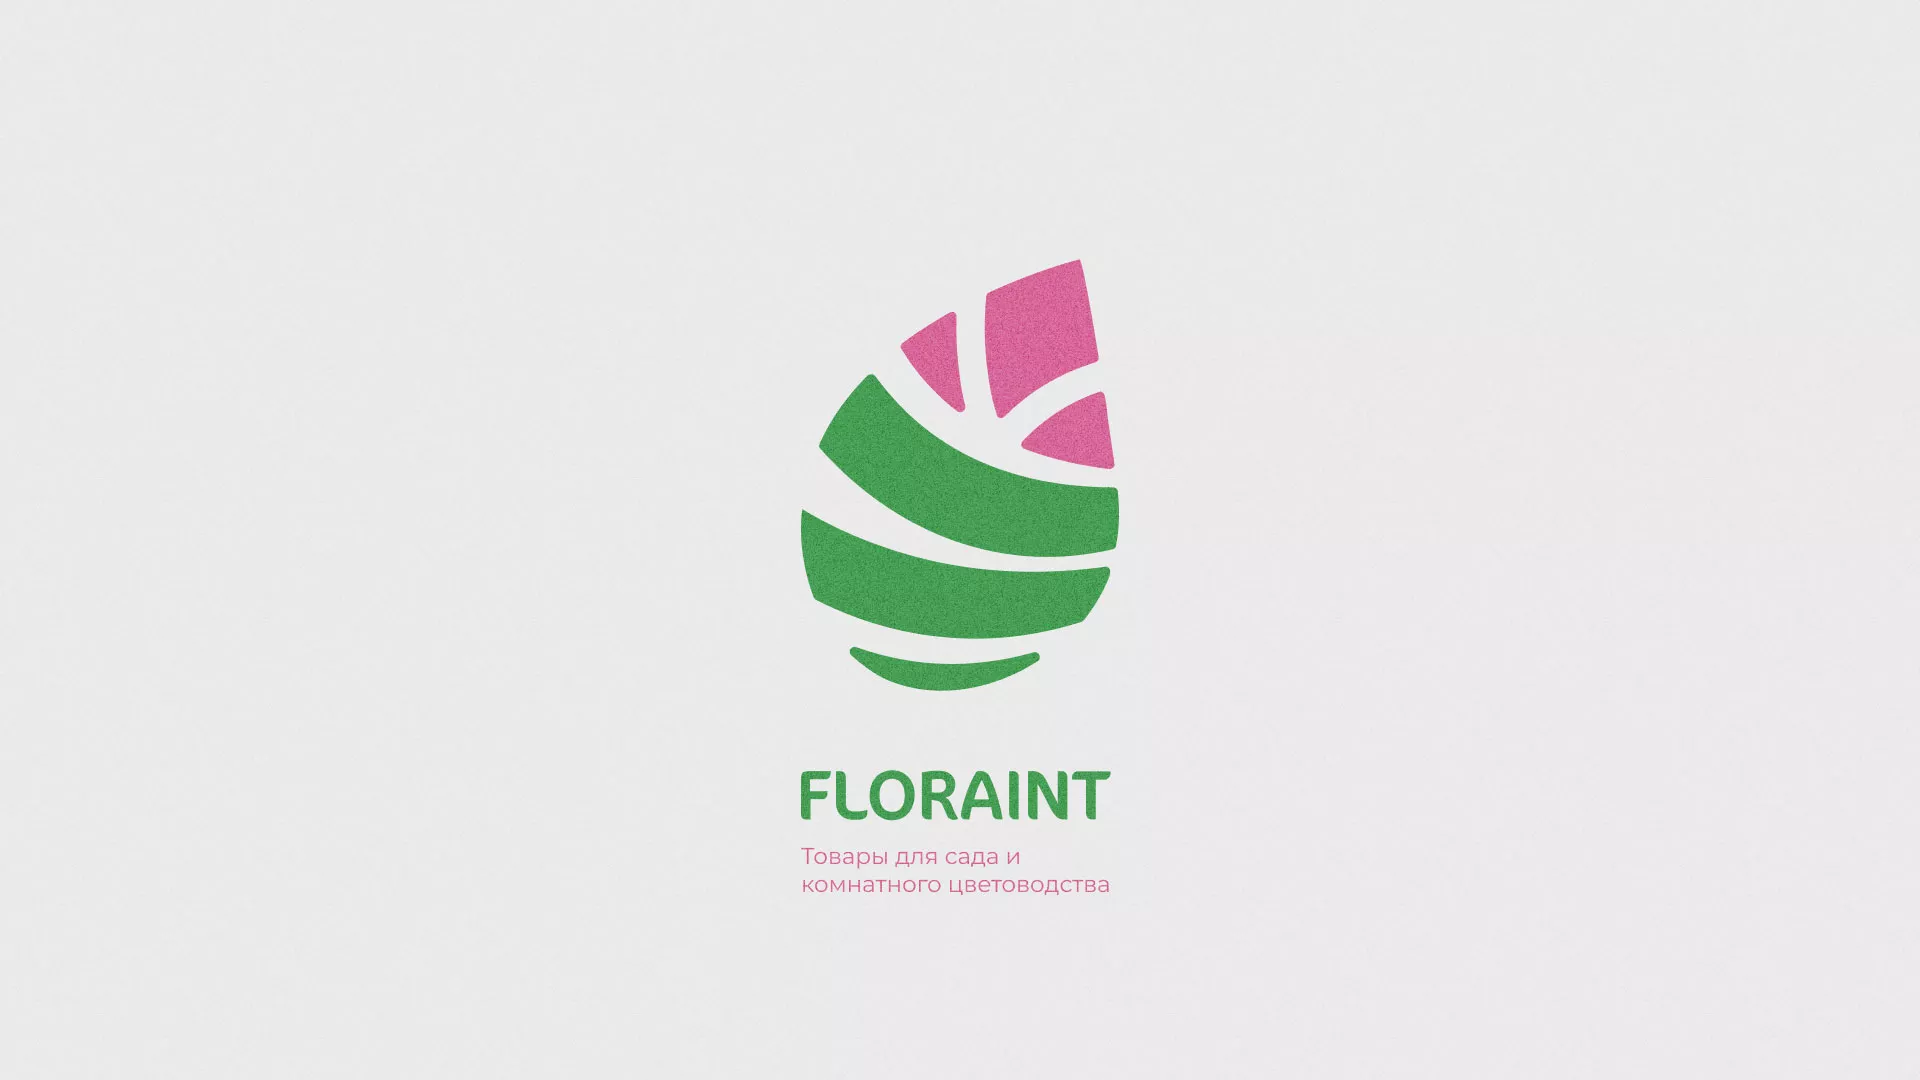 Разработка оформления профиля Instagram для магазина «Floraint» в Макушино